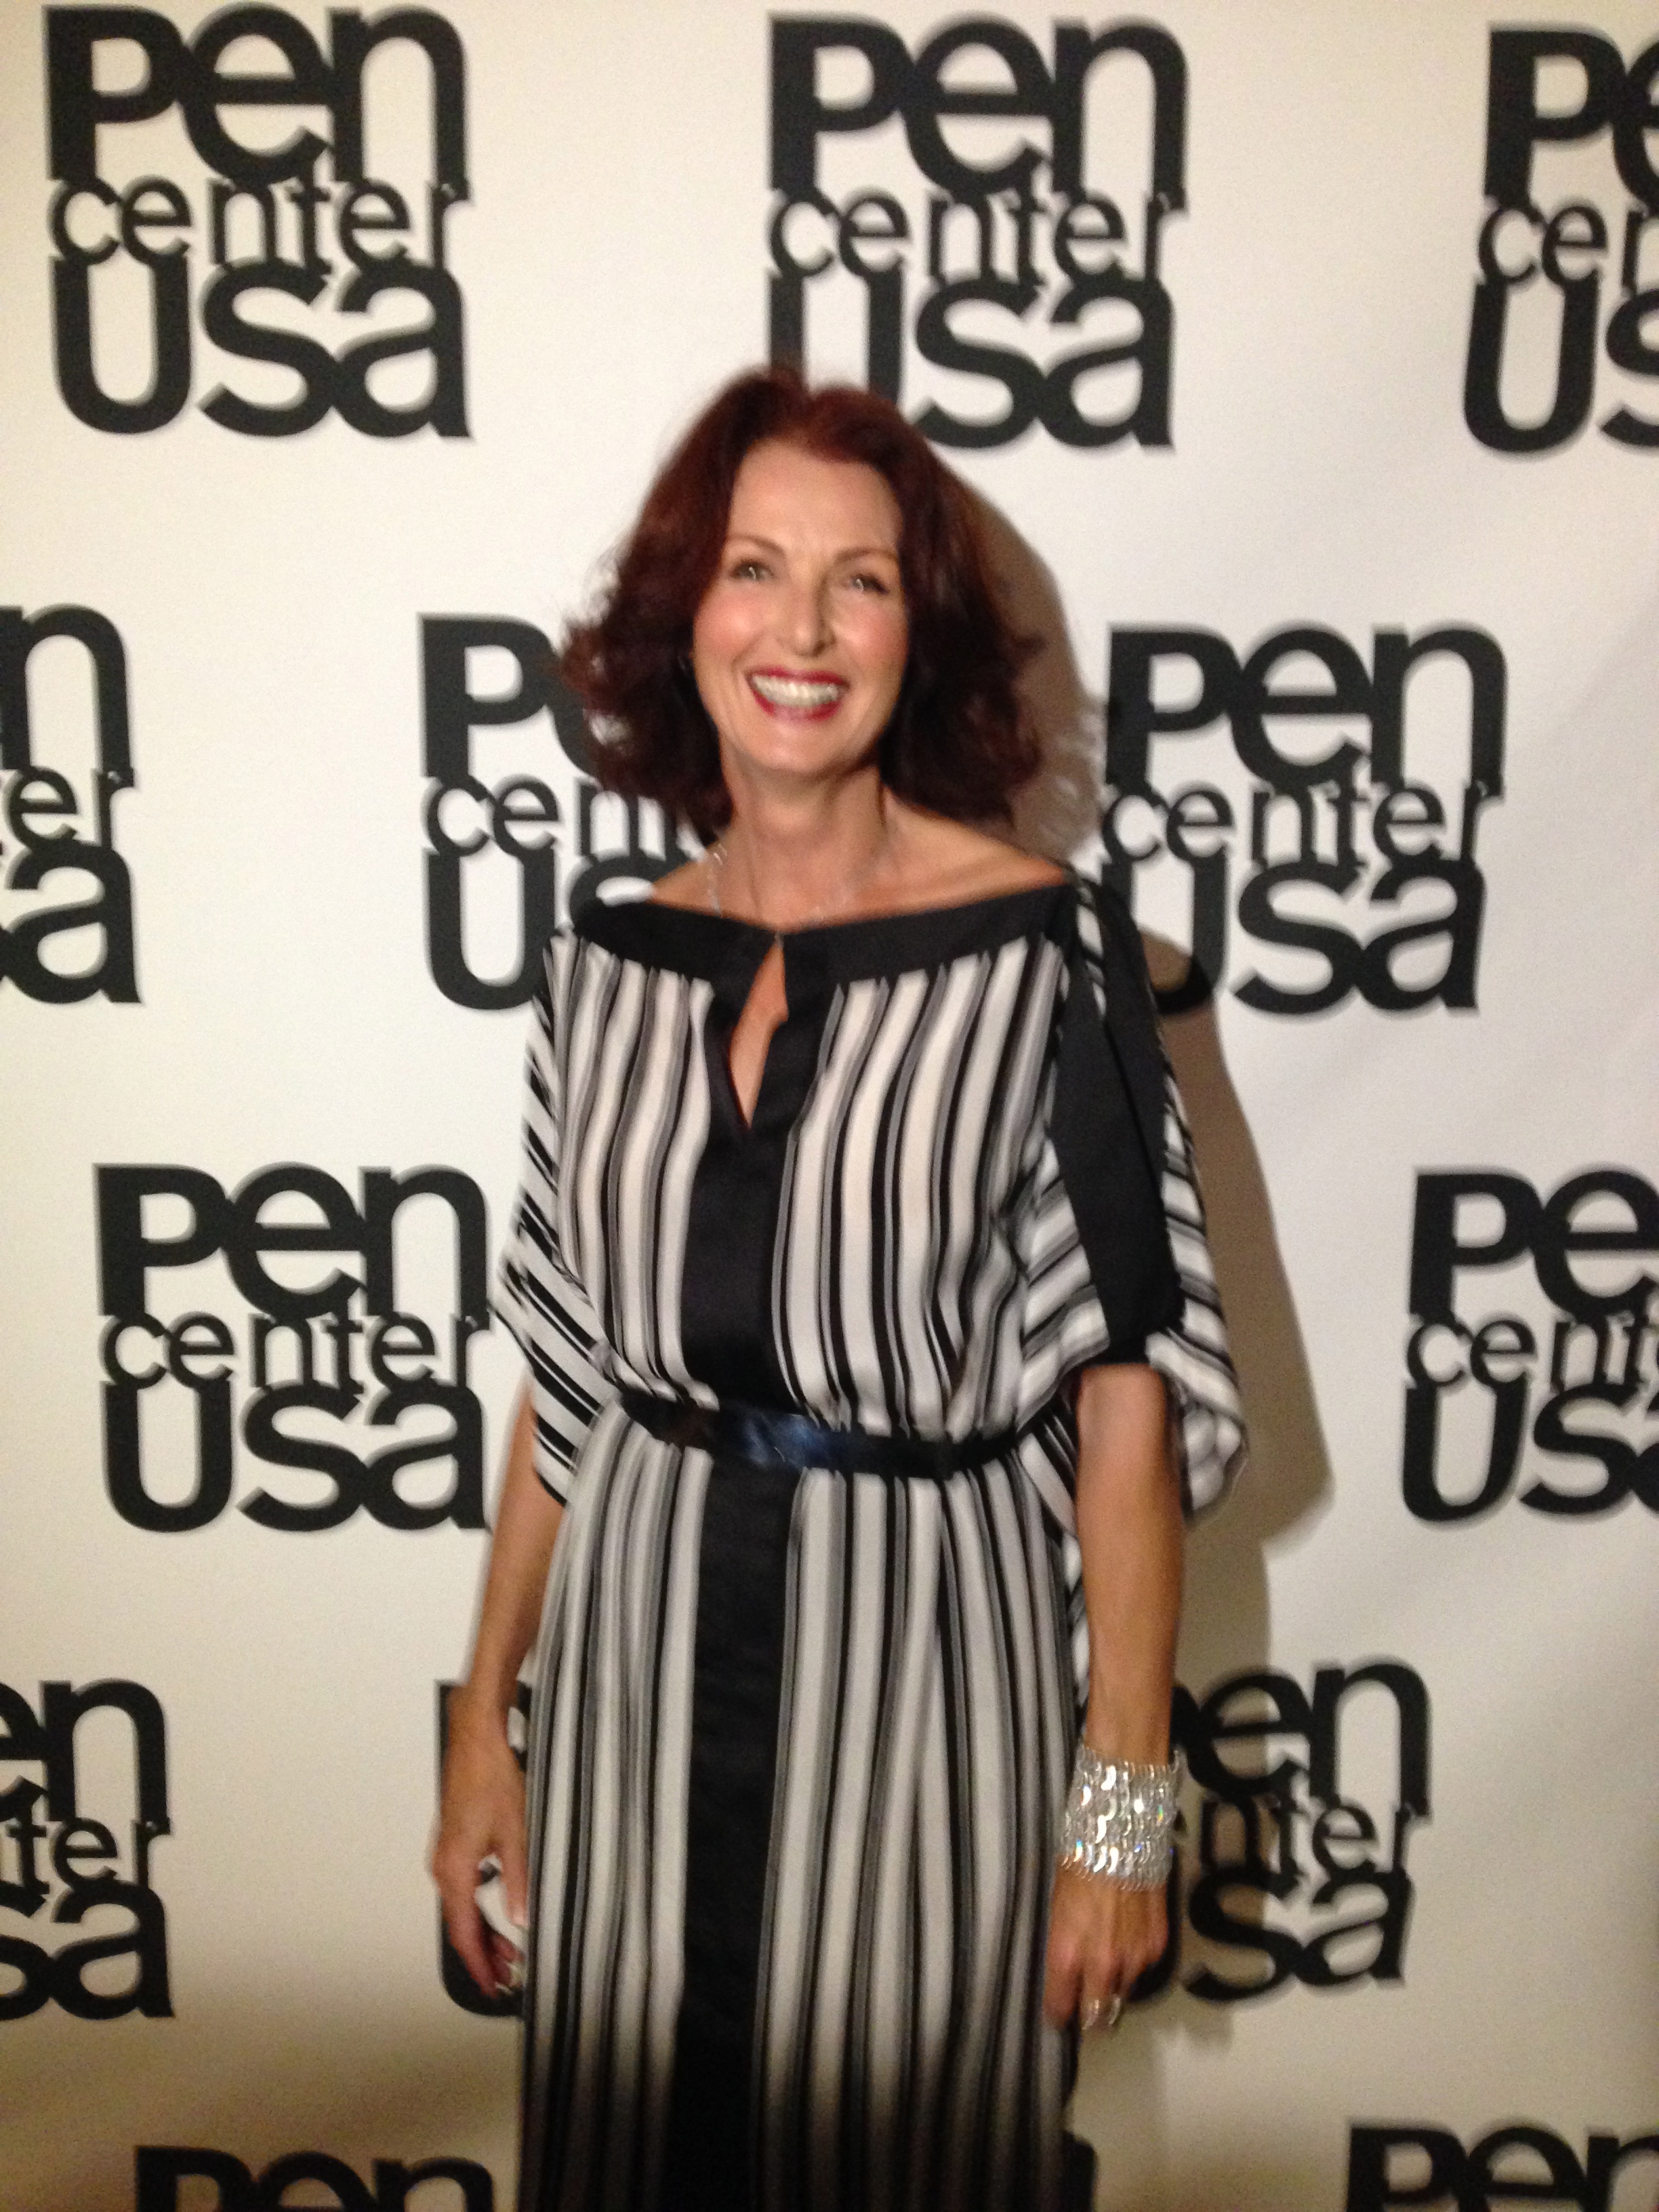 Pen Center USA Awards